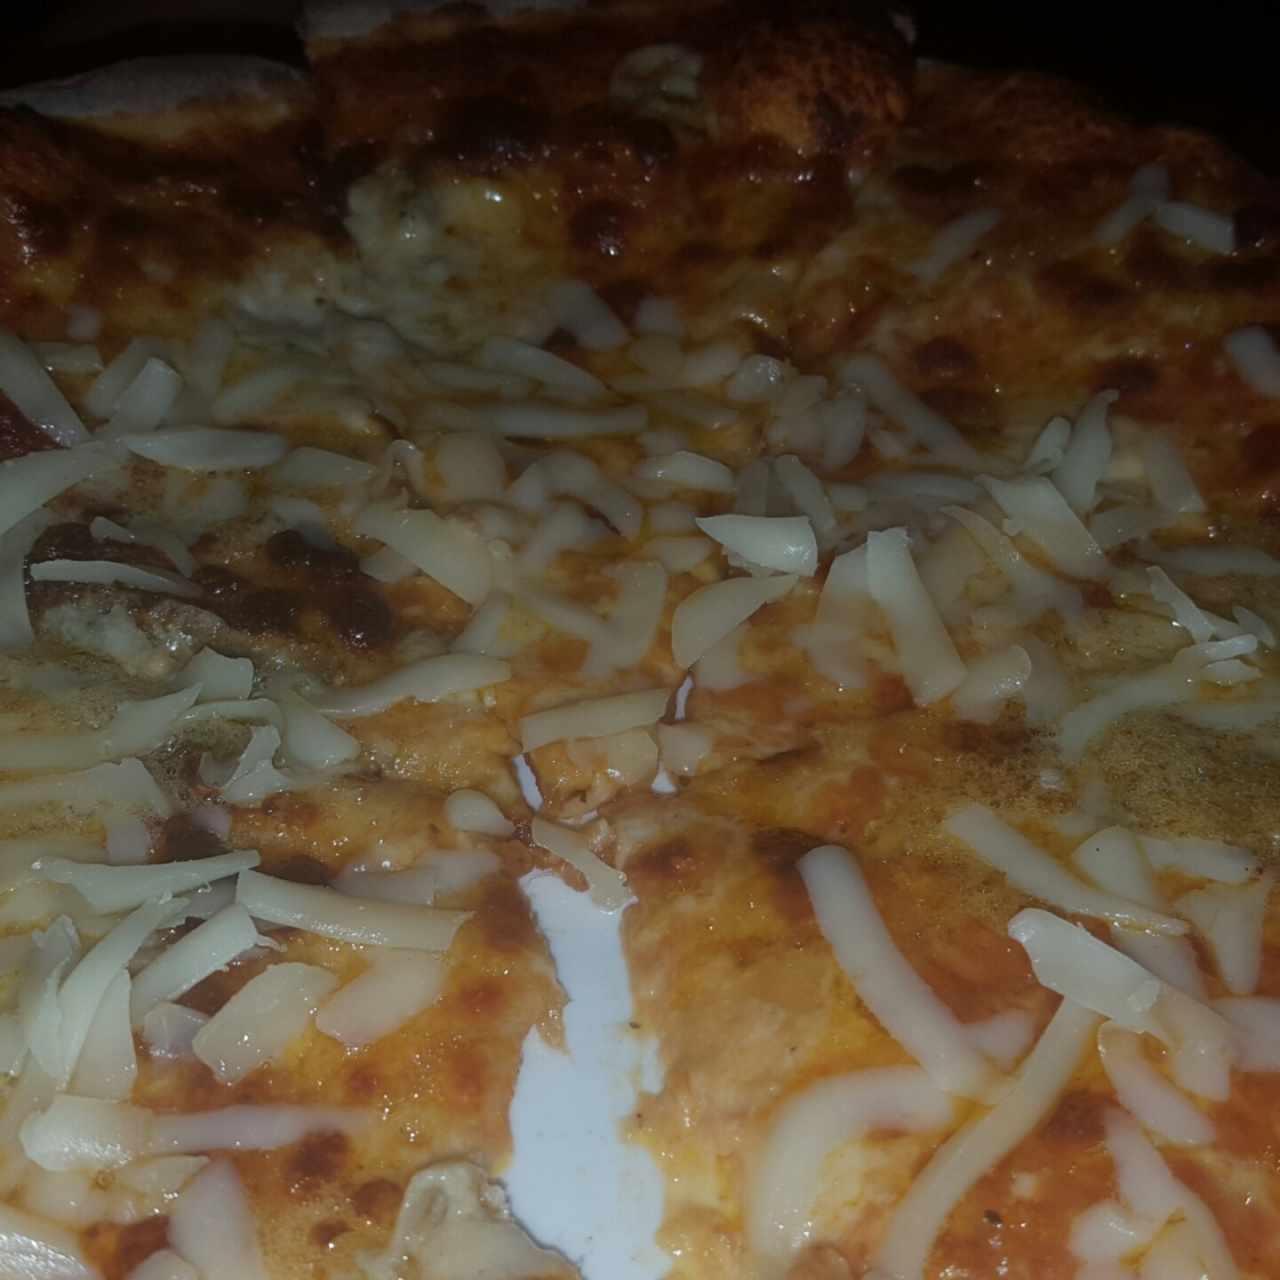 Pizza 3 Quesos